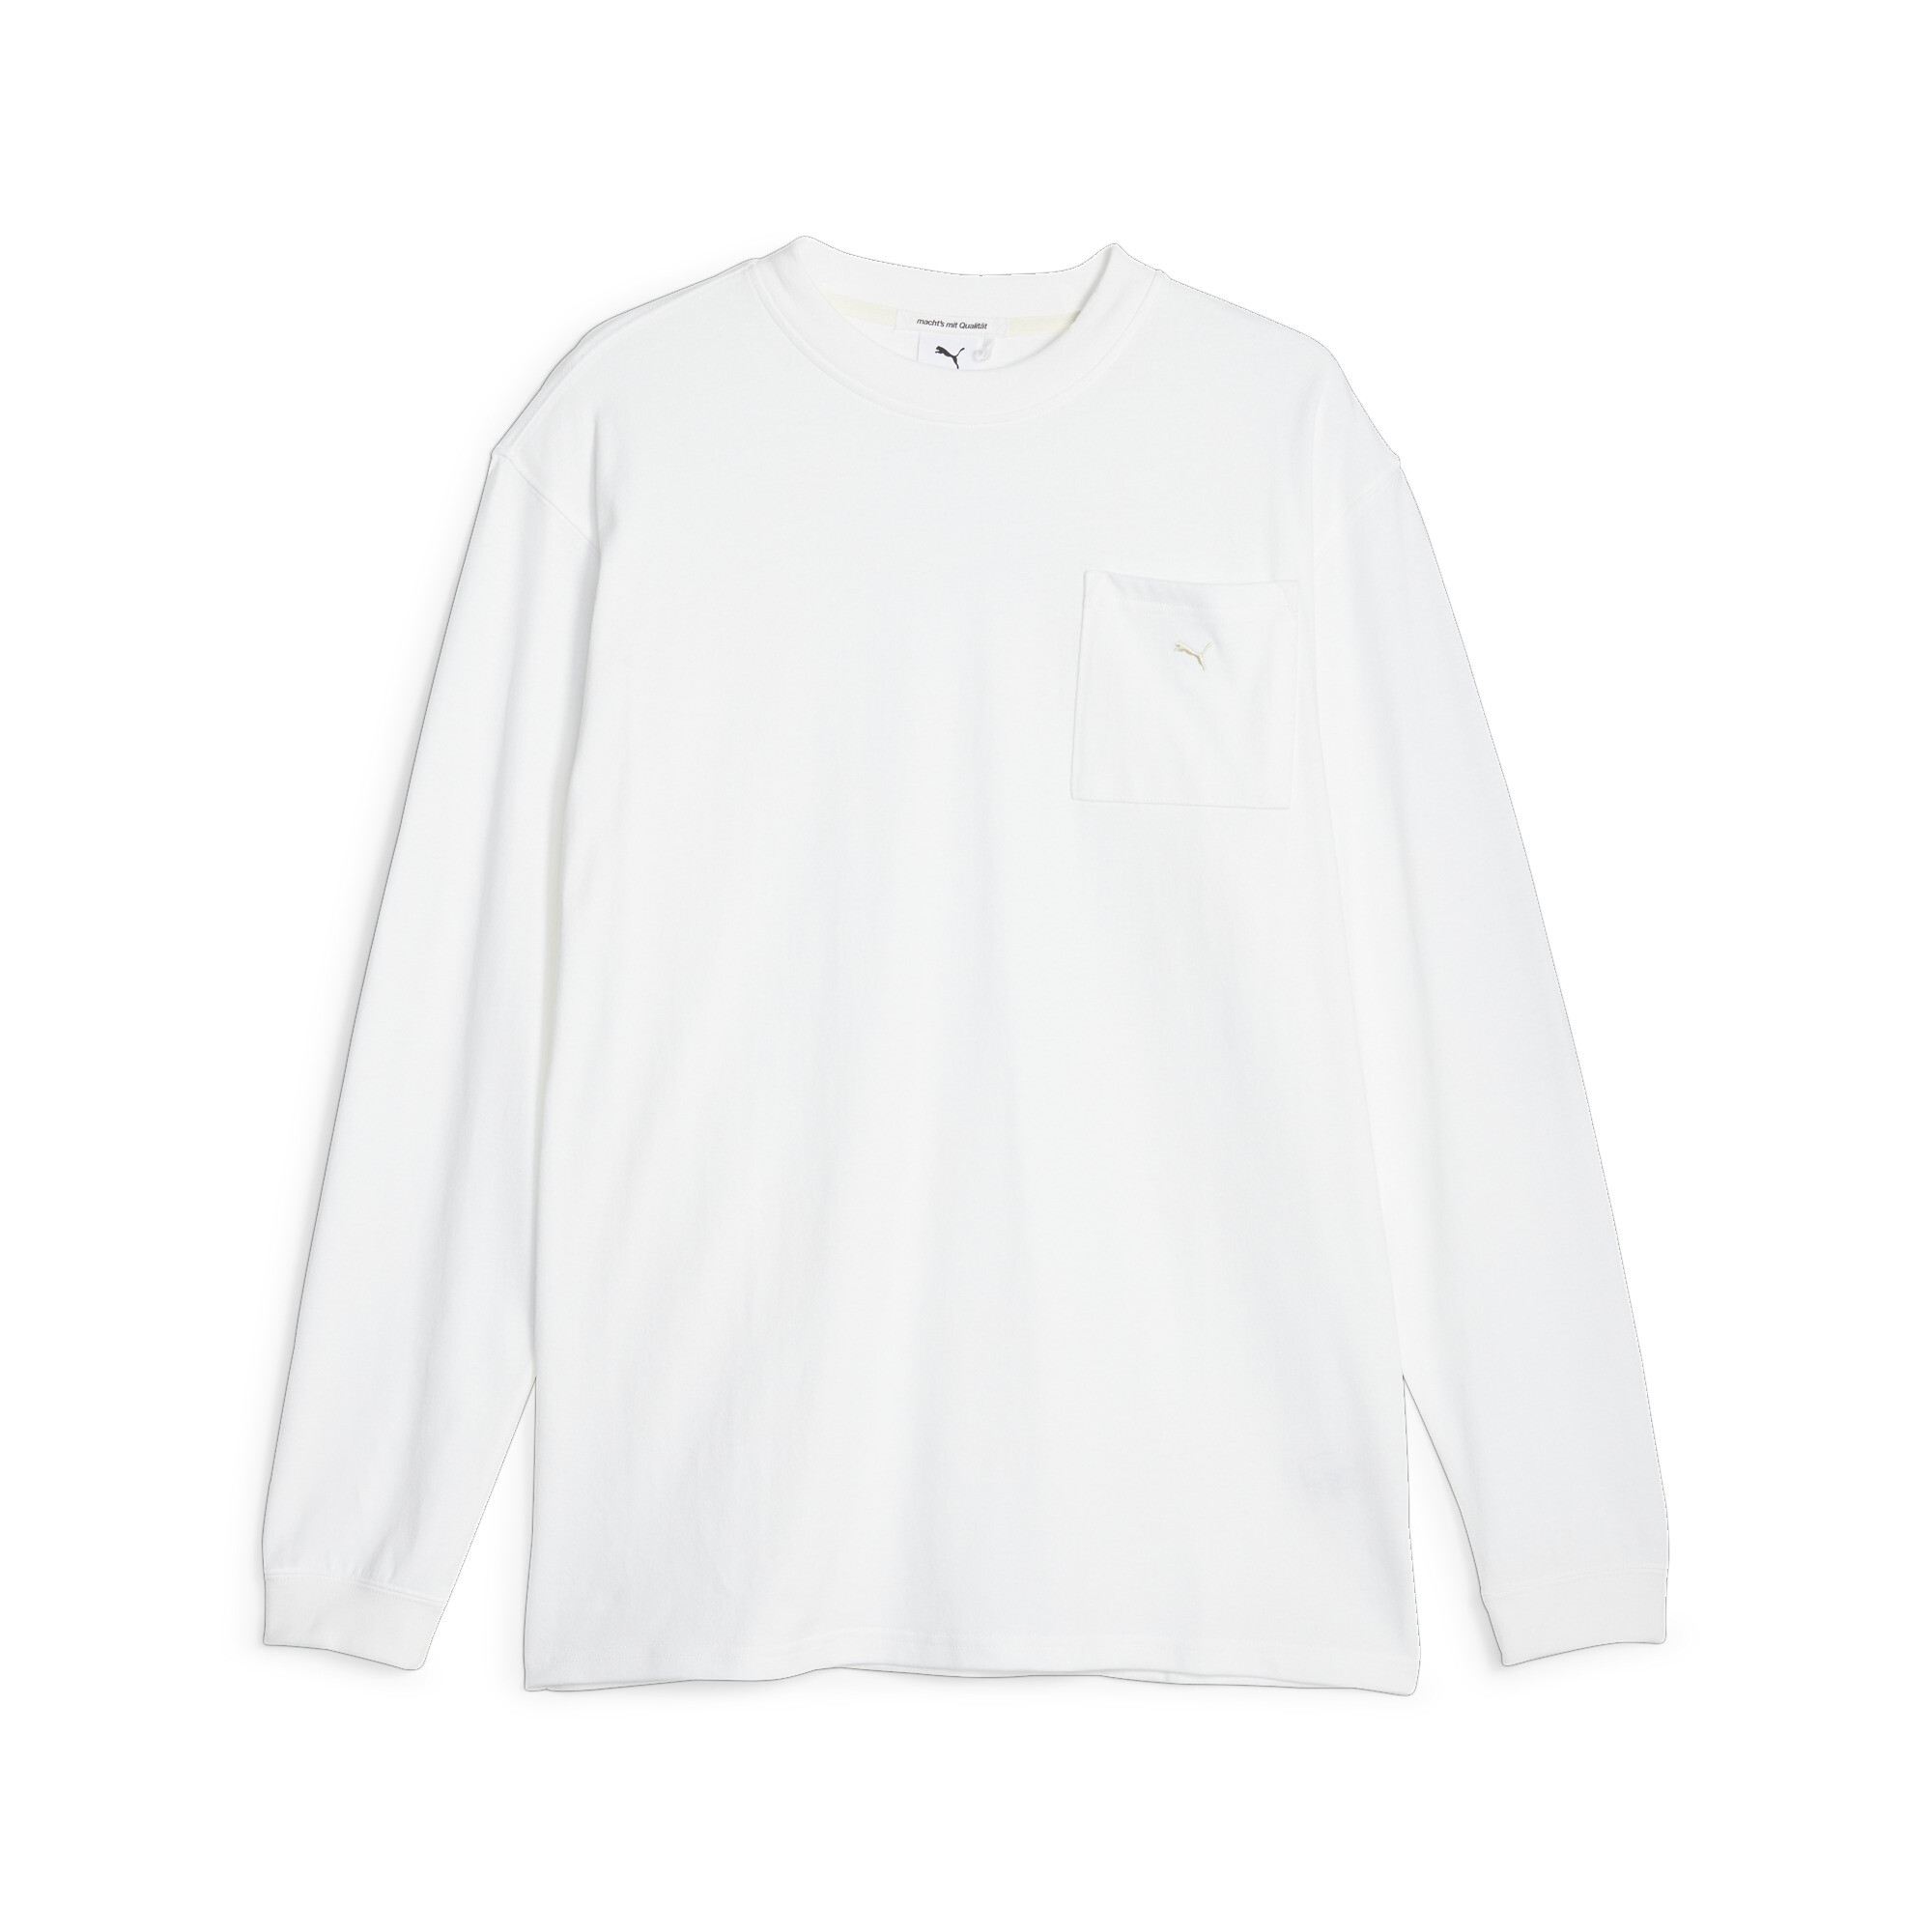  プーマ ユニセックス MMQ サービス ライン ポケット Tシャツ 長袖 ユニセックス PUMA White ｜PUMA.com